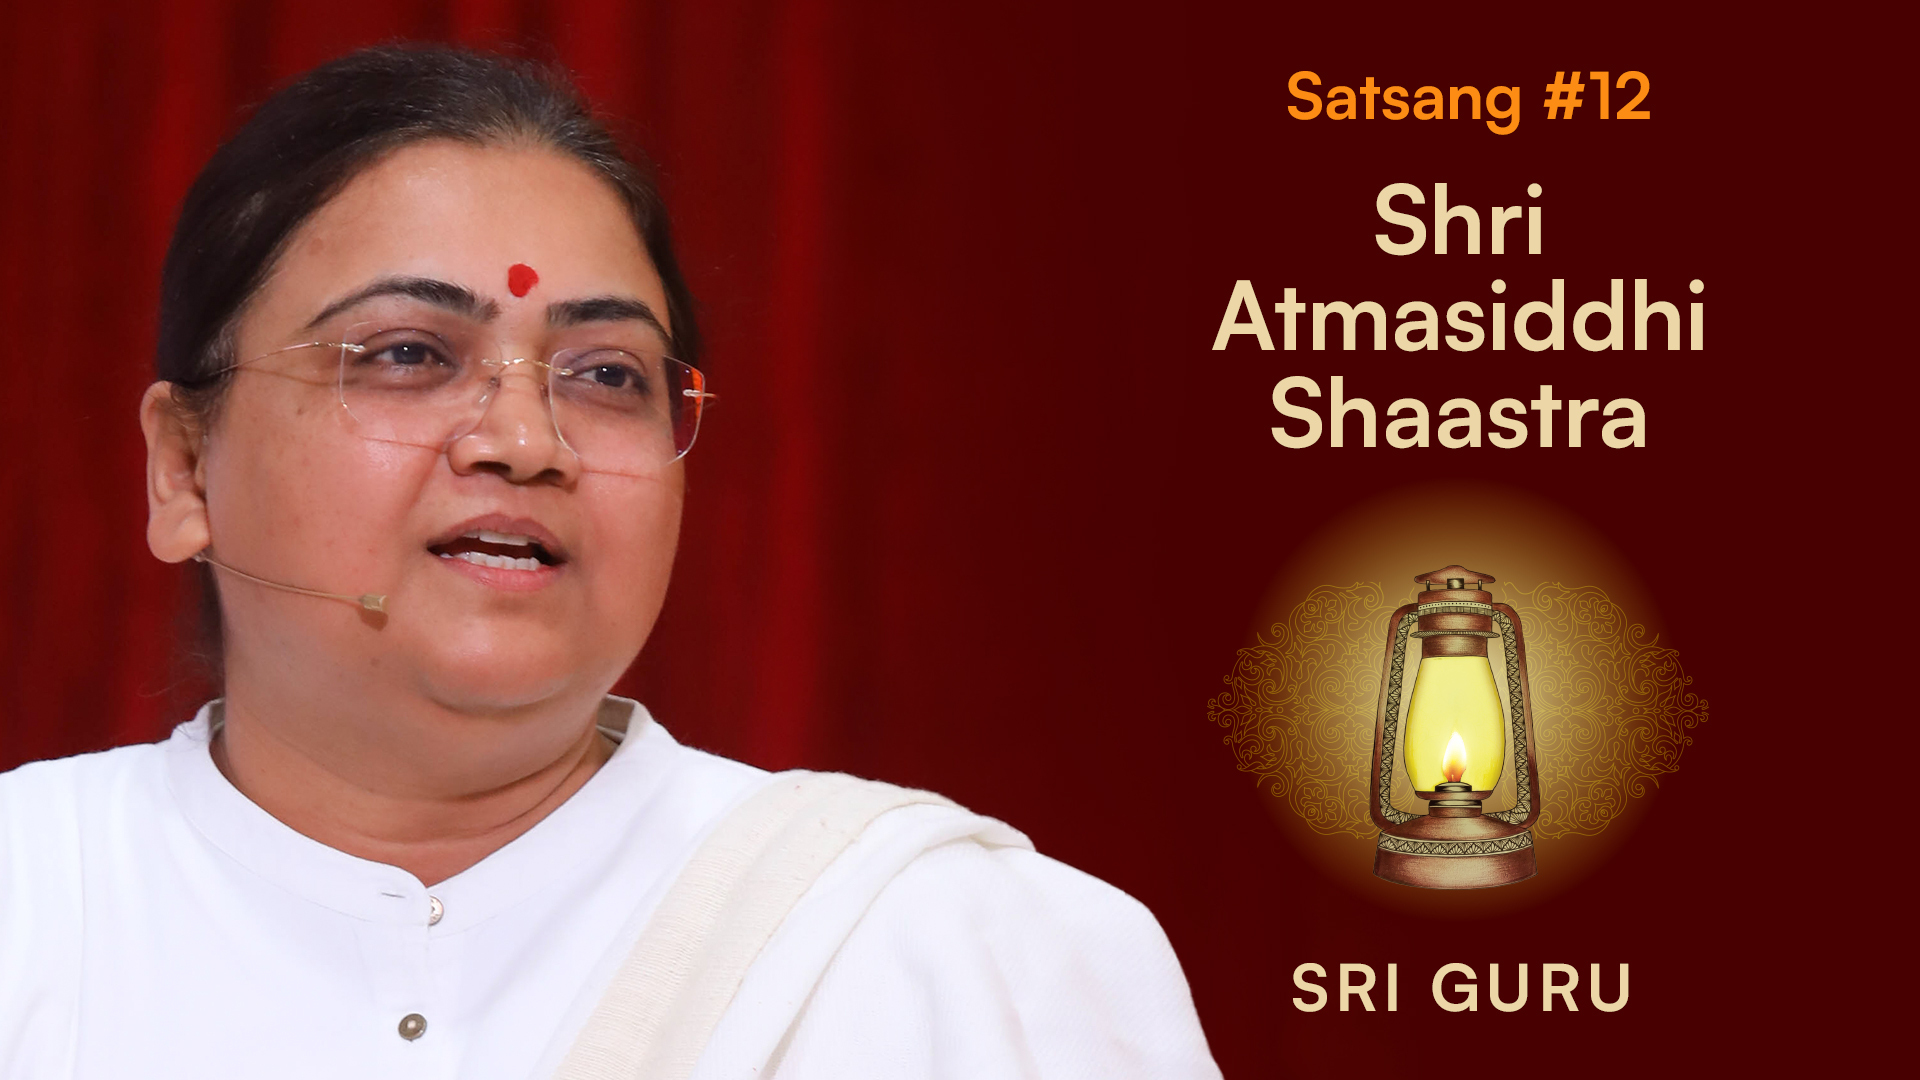 Sh. Atmasiddhi Shaastra Satsang 12